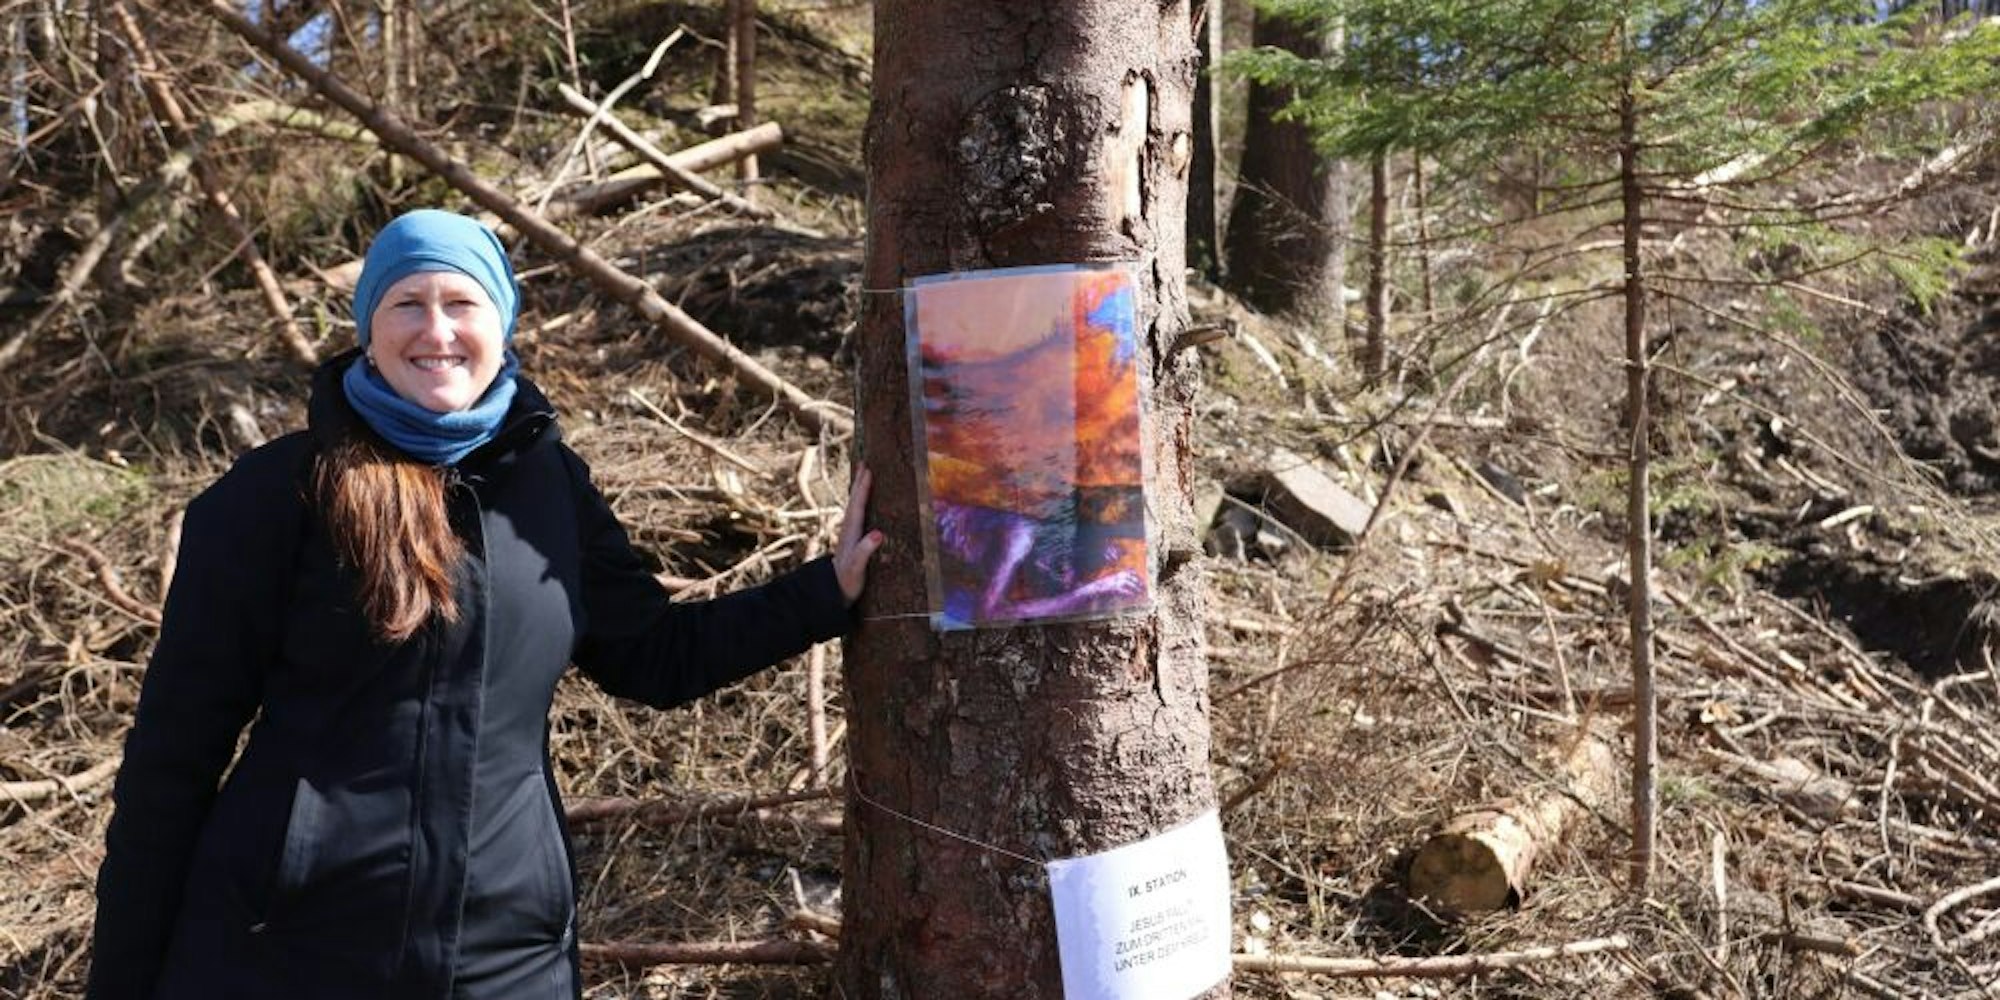 Alexandra Pook Pfarrerin der evangelischen Gemeinde Hülsenbusch-Kotthausen, hat den „Kreuzweg im Wald“ an und zwischen Baumstämmen installiert.